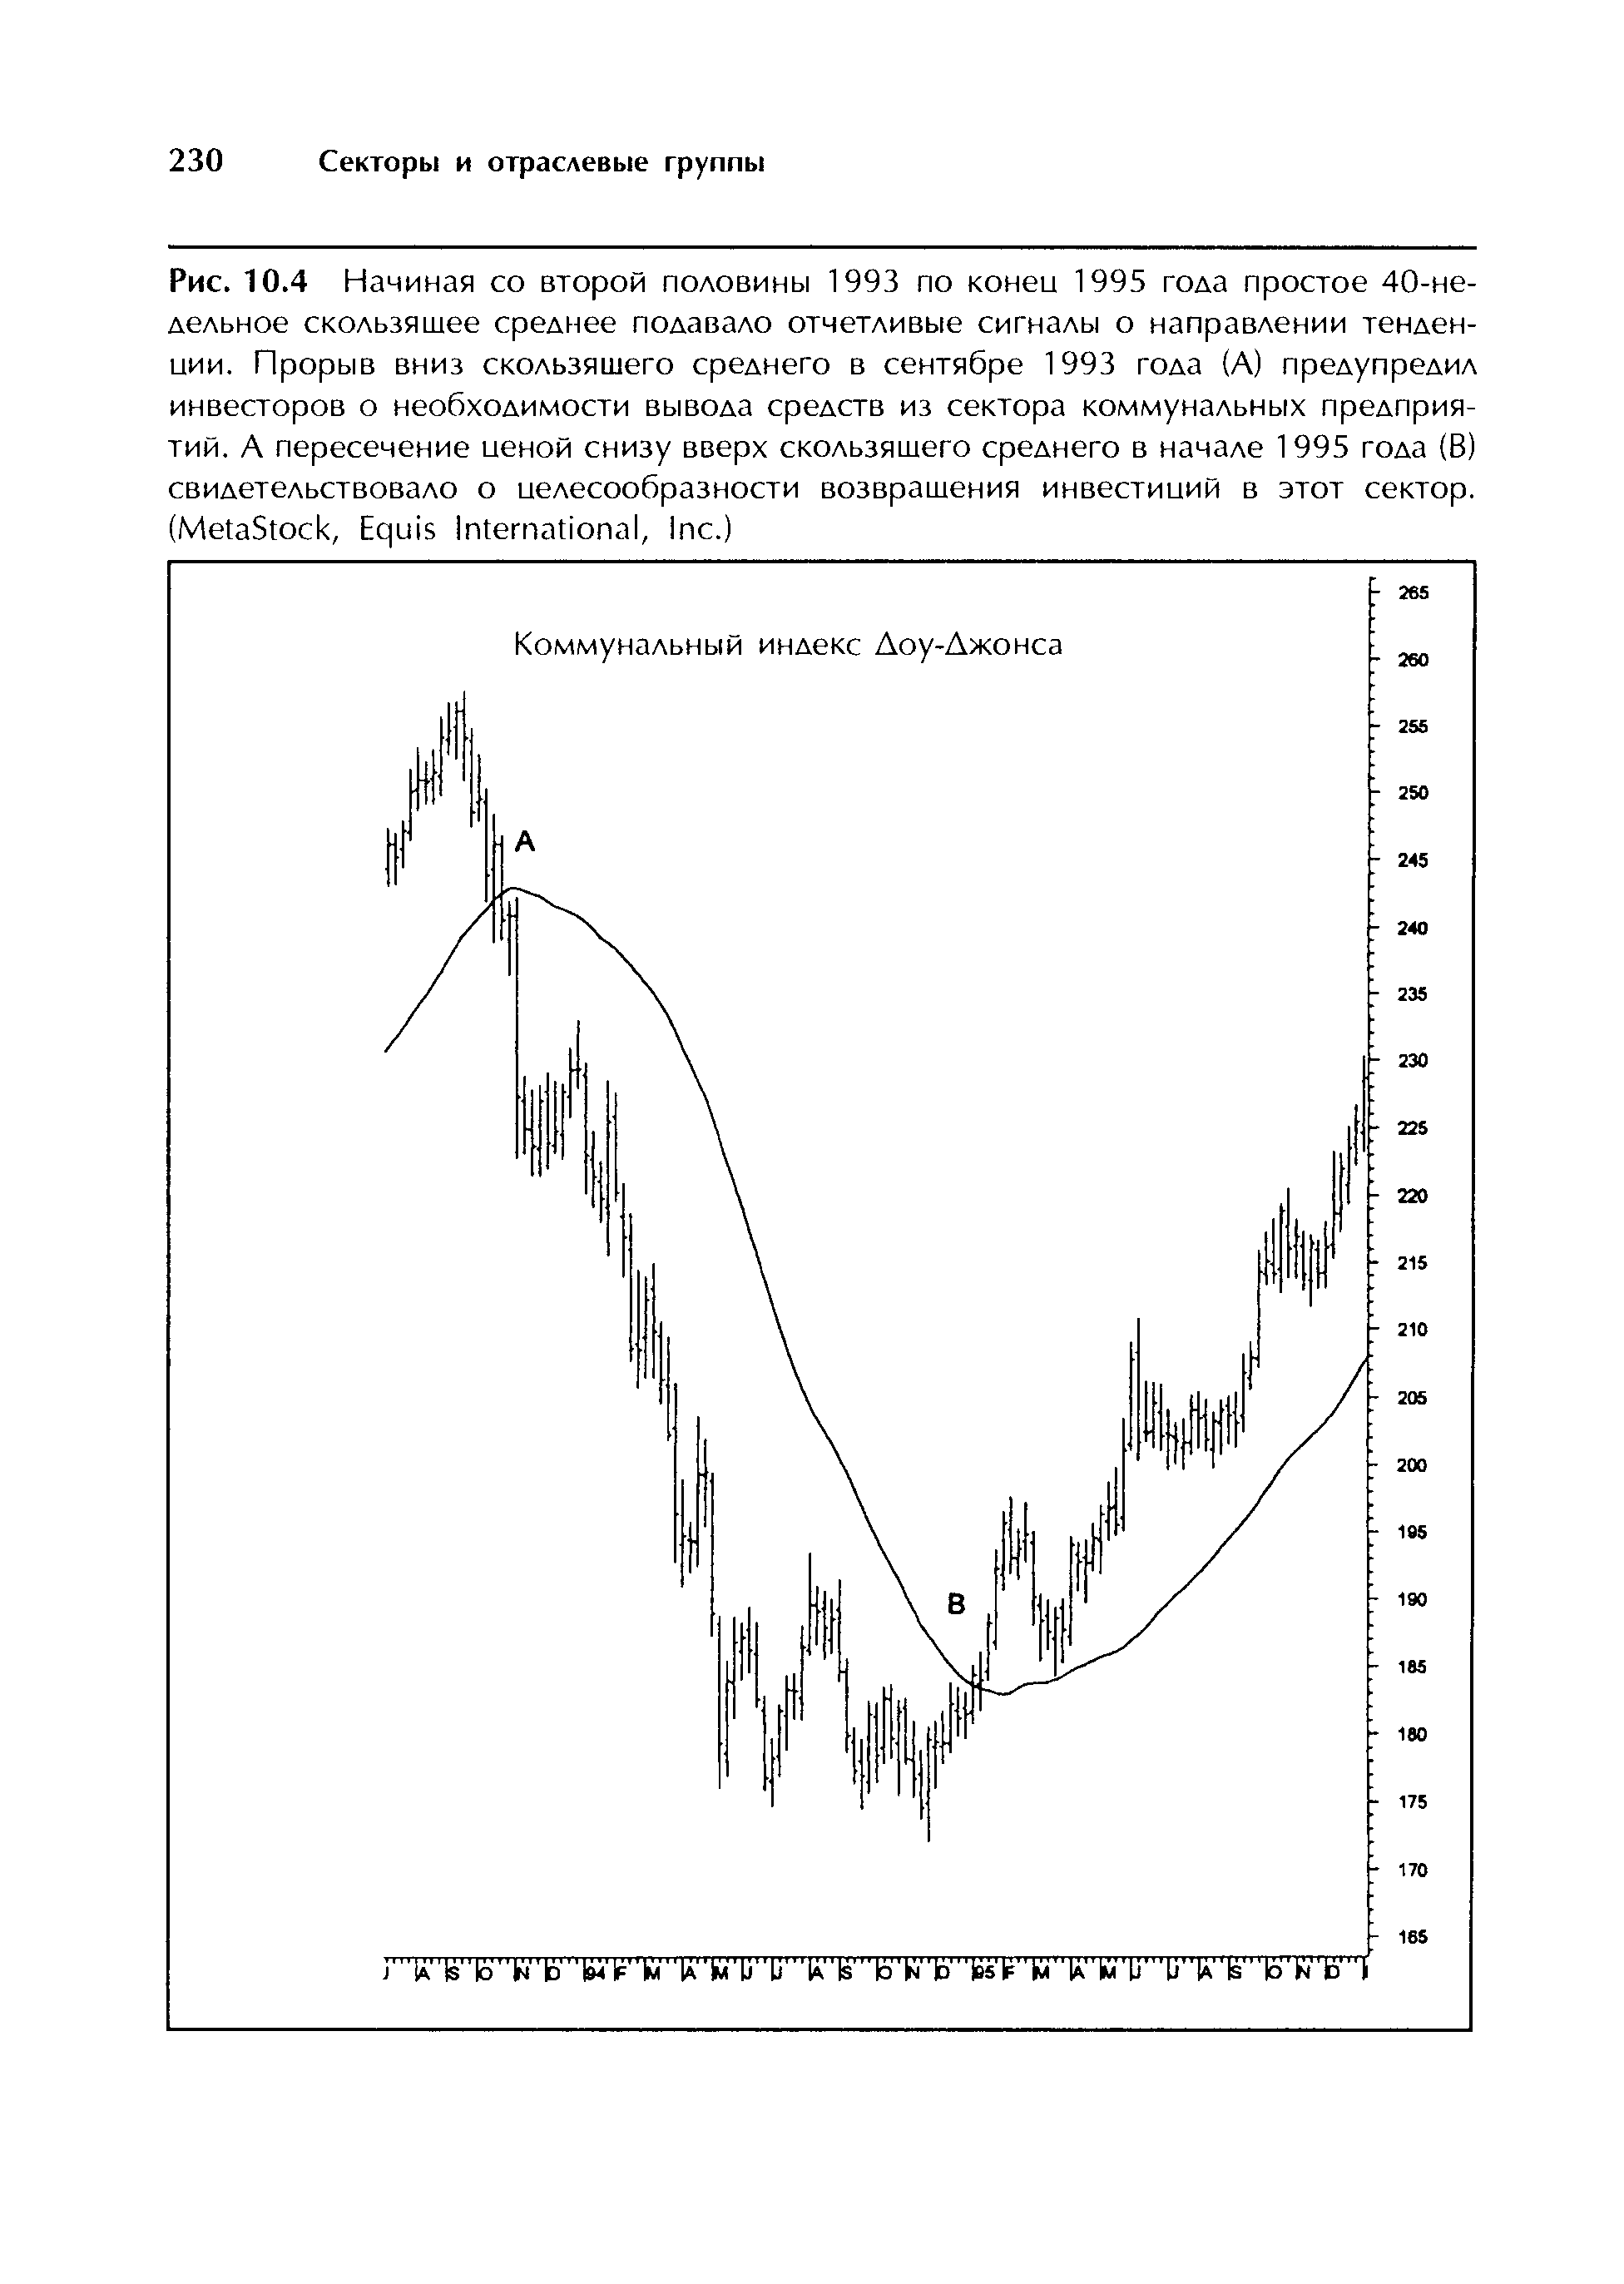 Рис. 10.4 Начиная со второй половины 1993 по коней 1995 года простое 40-не-дельное <a href="/info/4825">скользящее среднее</a> подавало отчетливые сигналы о направлении тенденции. <a href="/info/50653">Прорыв вниз</a> <a href="/info/4825">скользящего среднего</a> в сентябре 1993 года (А) предупредил инвесторов о необходимости вывода средств из сектора <a href="/info/37004">коммунальных предприятий</a>. А пересечение иеной снизу вверх <a href="/info/4825">скользящего среднего</a> в начале 1995 года (В) свидетельствовало о целесообразности возвращения инвестиций в этот сектор. (MetaSto k, Equis International, In .)
